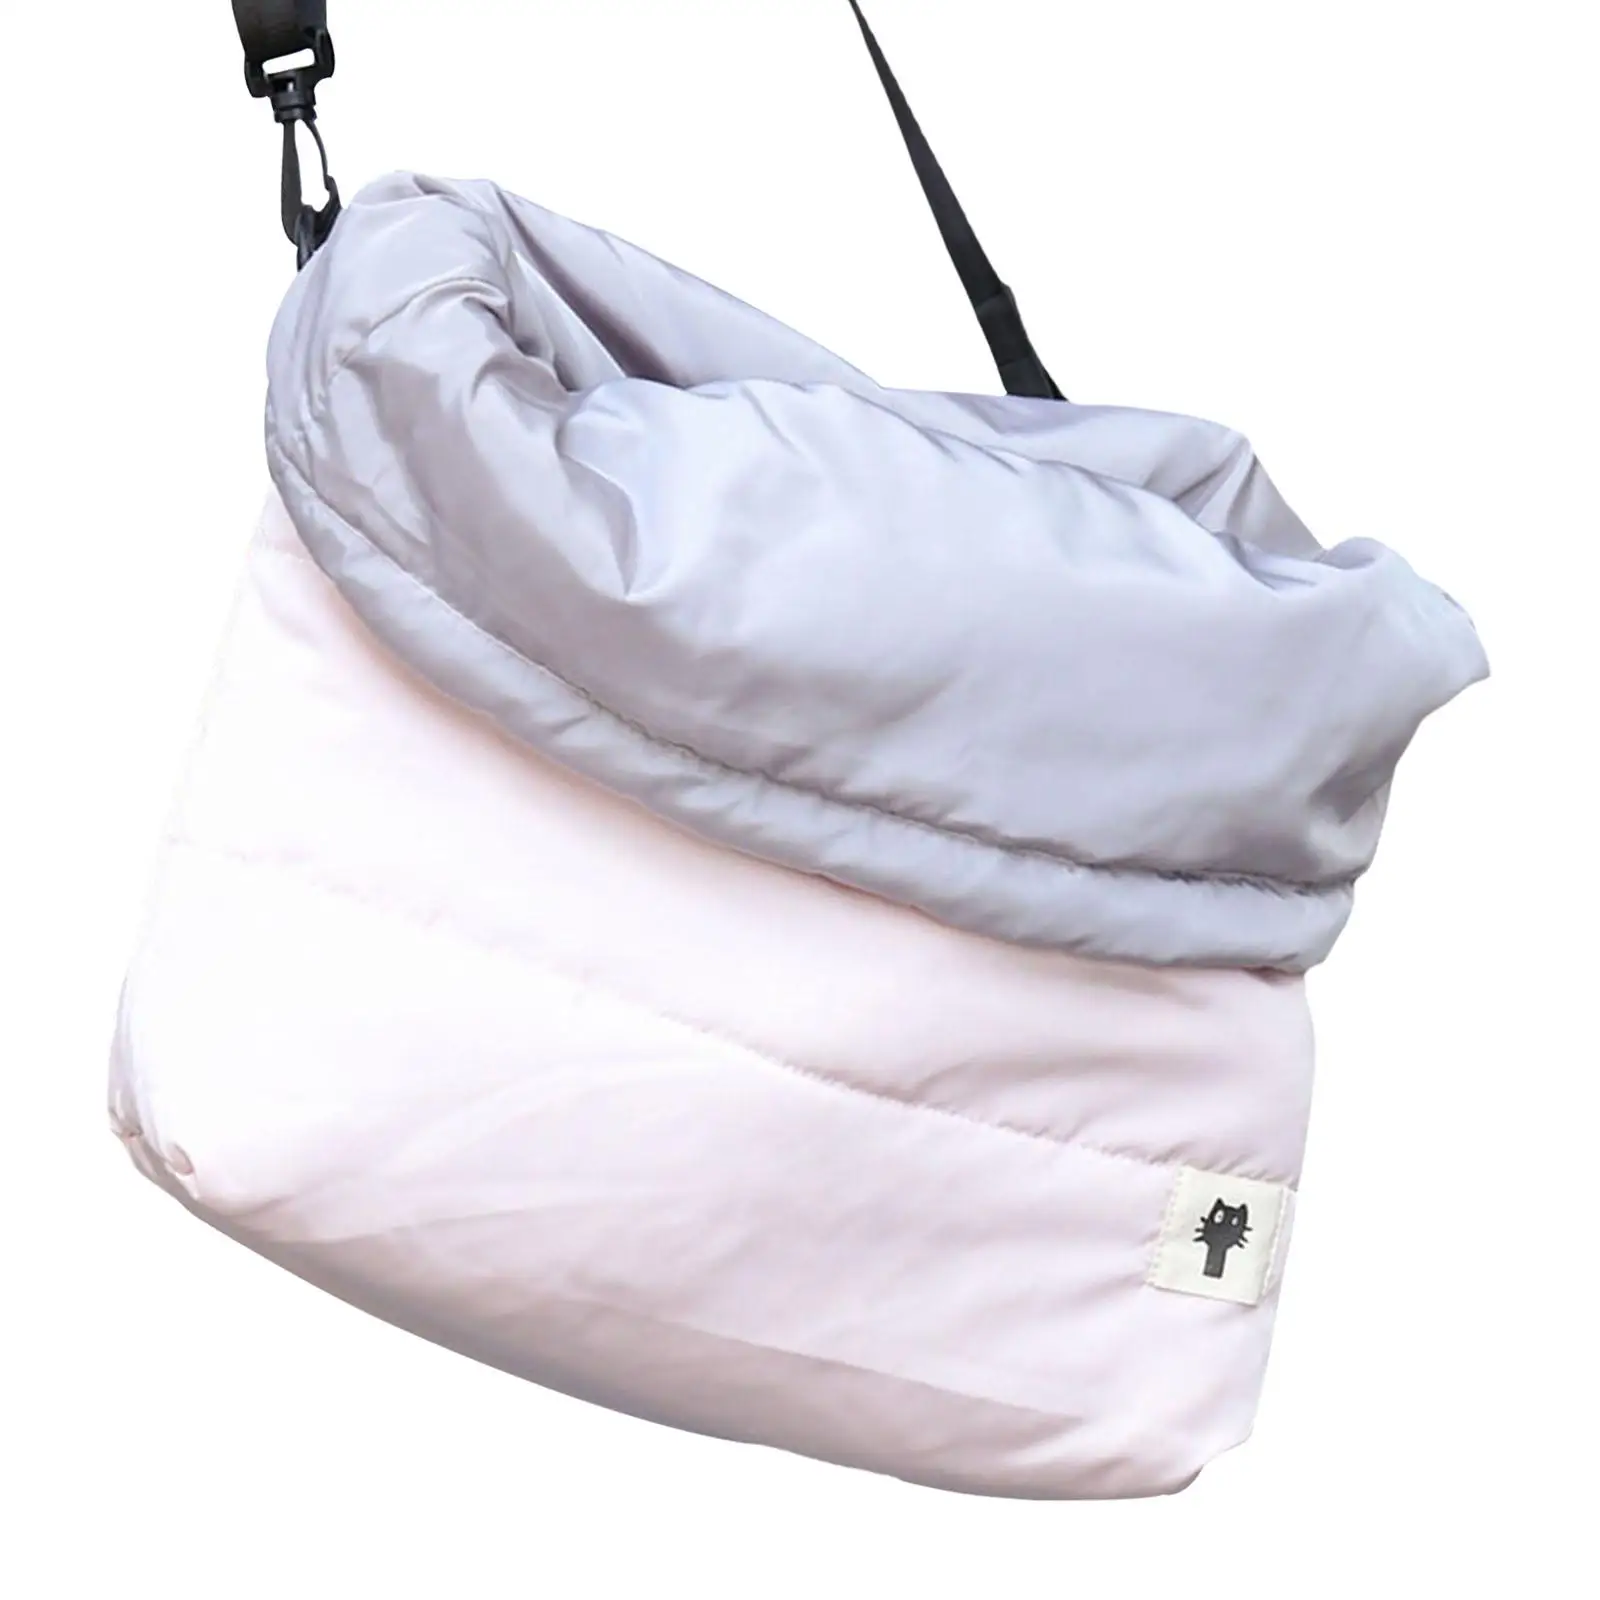 Portable Cat Dog Carrier Bag Single Shoulder Bag Handbag Pet Travel Carrier Pet Backpack for Puppy Outdoor Travel Walking Hiking